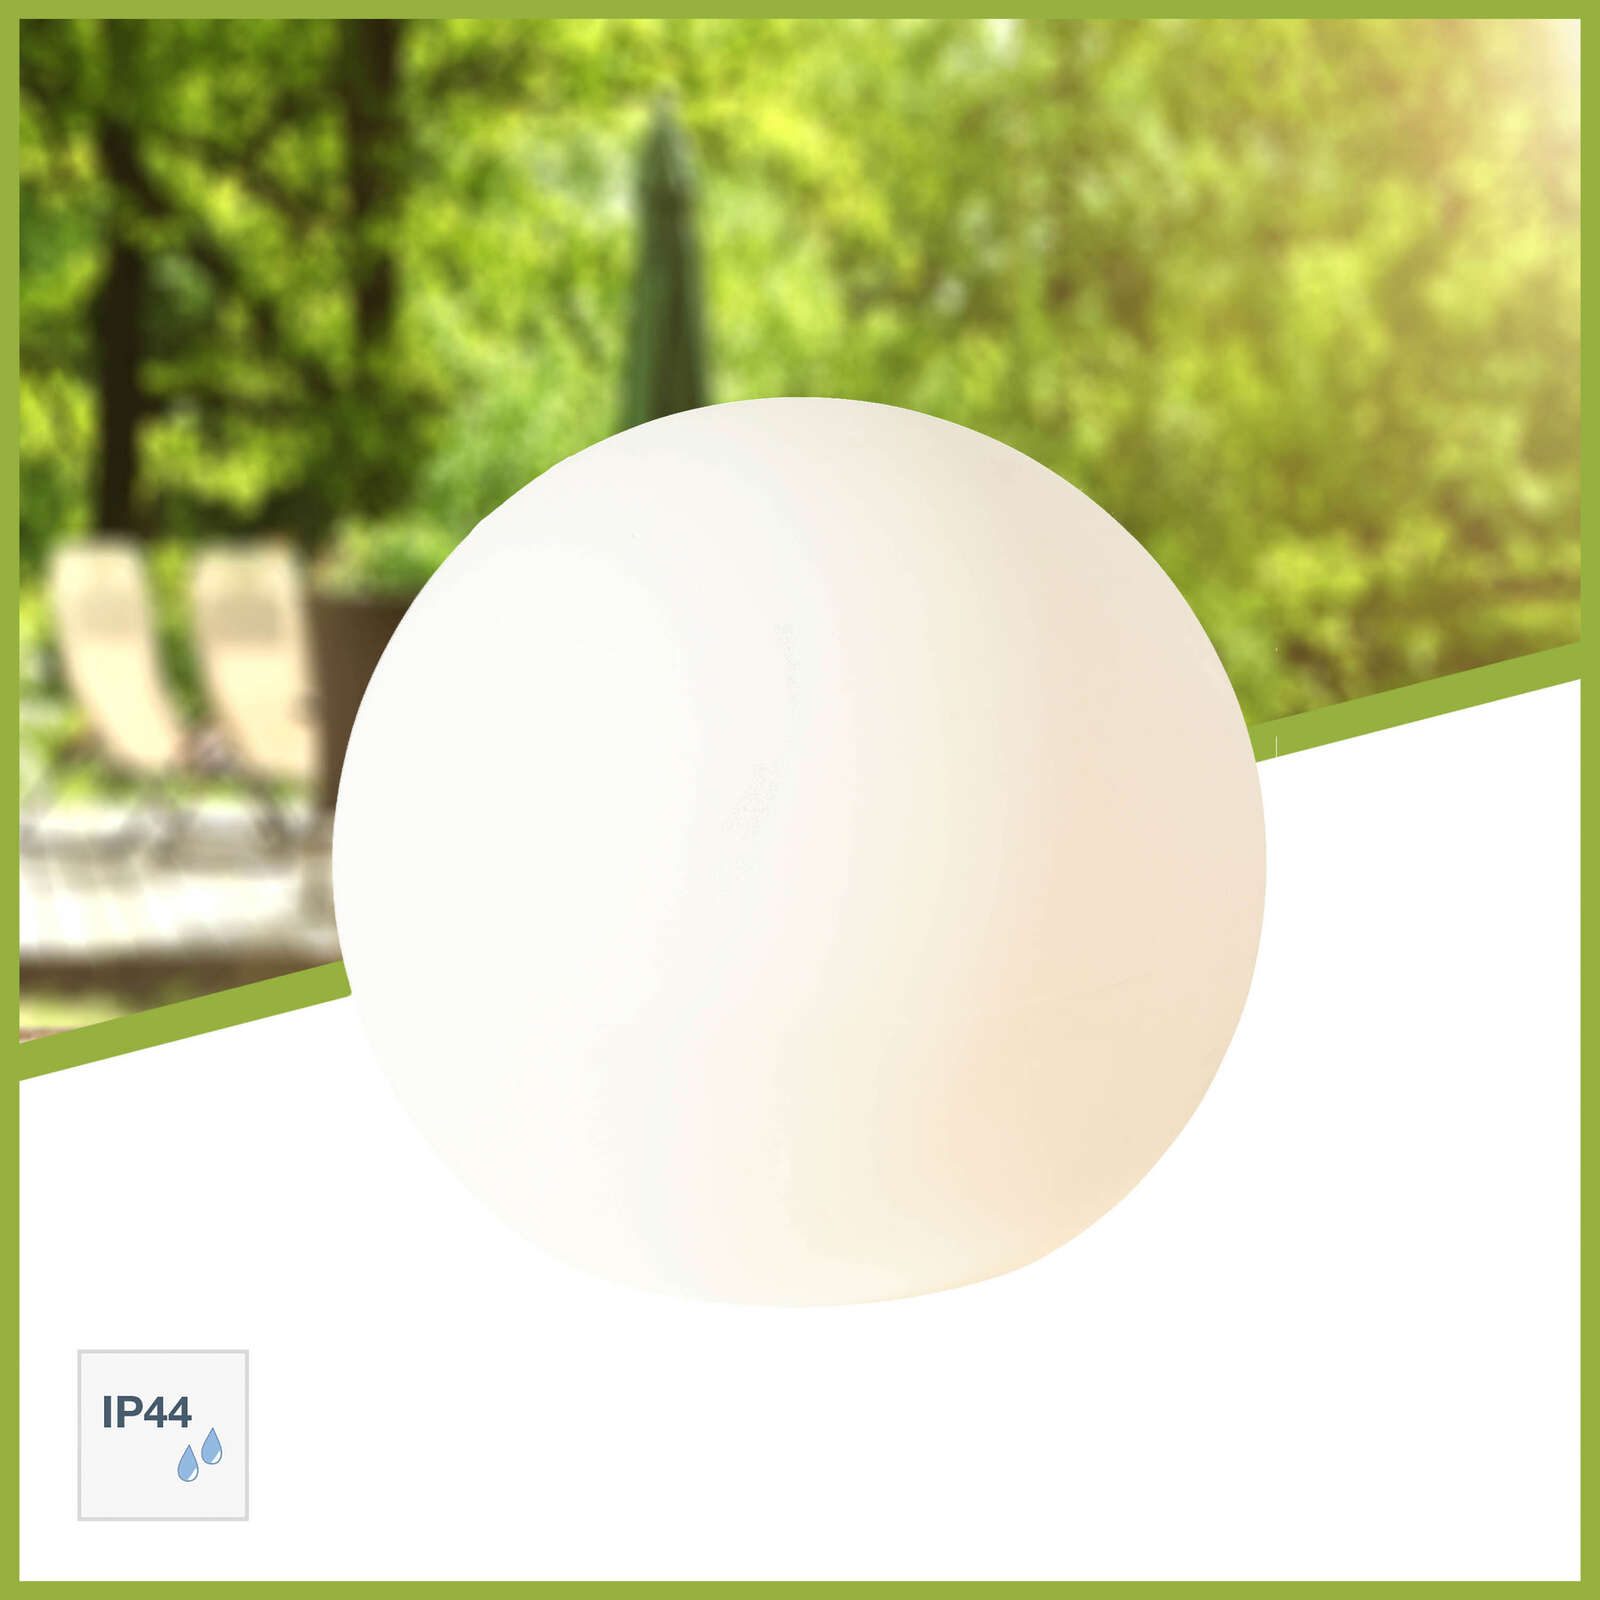             Plastic outdoor light globe - Hans 3 - White
        